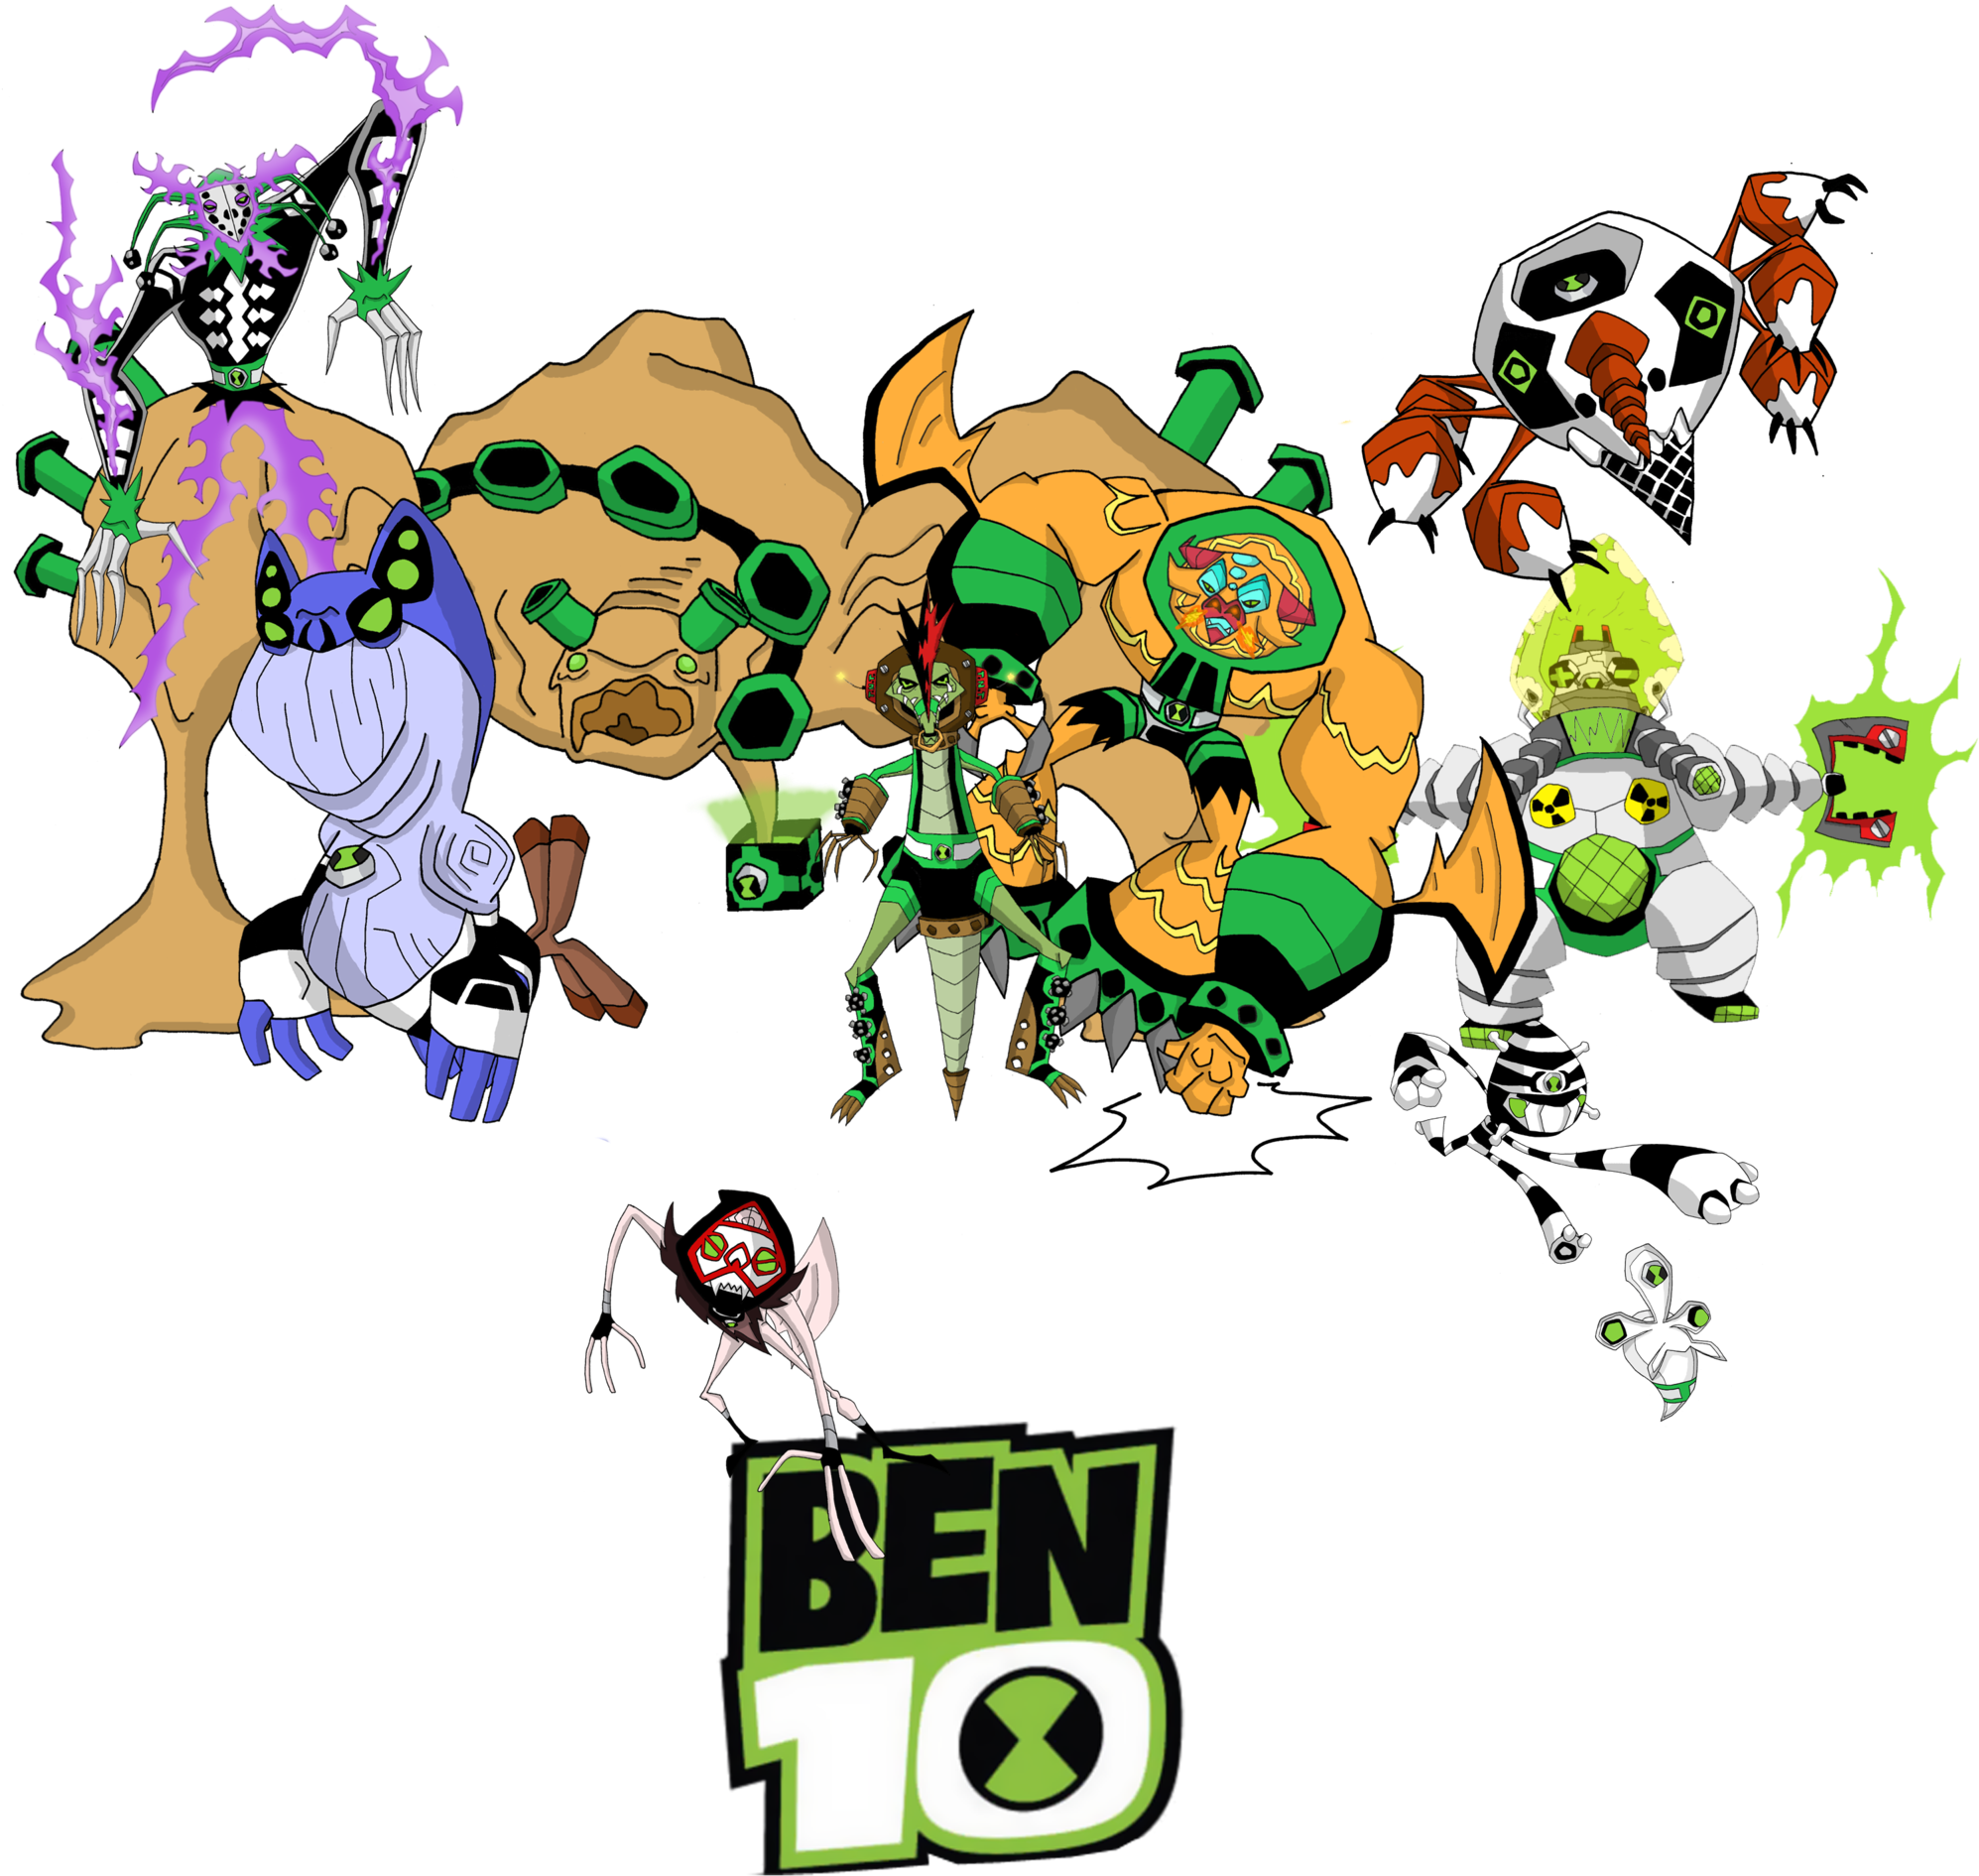 Ben 10 Custom Logo by tmntsam on DeviantArt